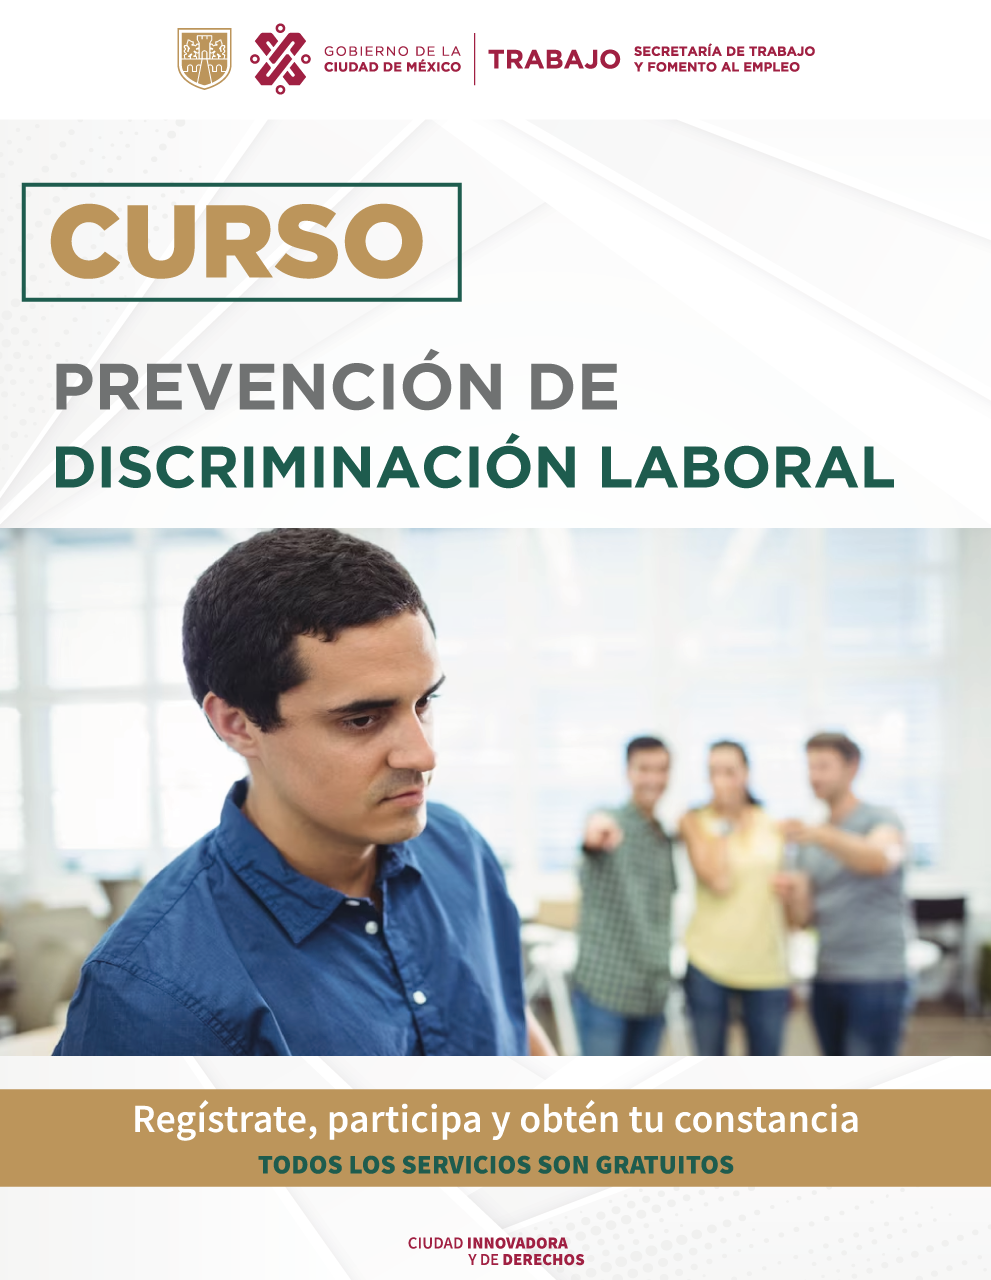 CURSO_SS_Prevención-de-discriminación-laboral_NOV_24_E.png